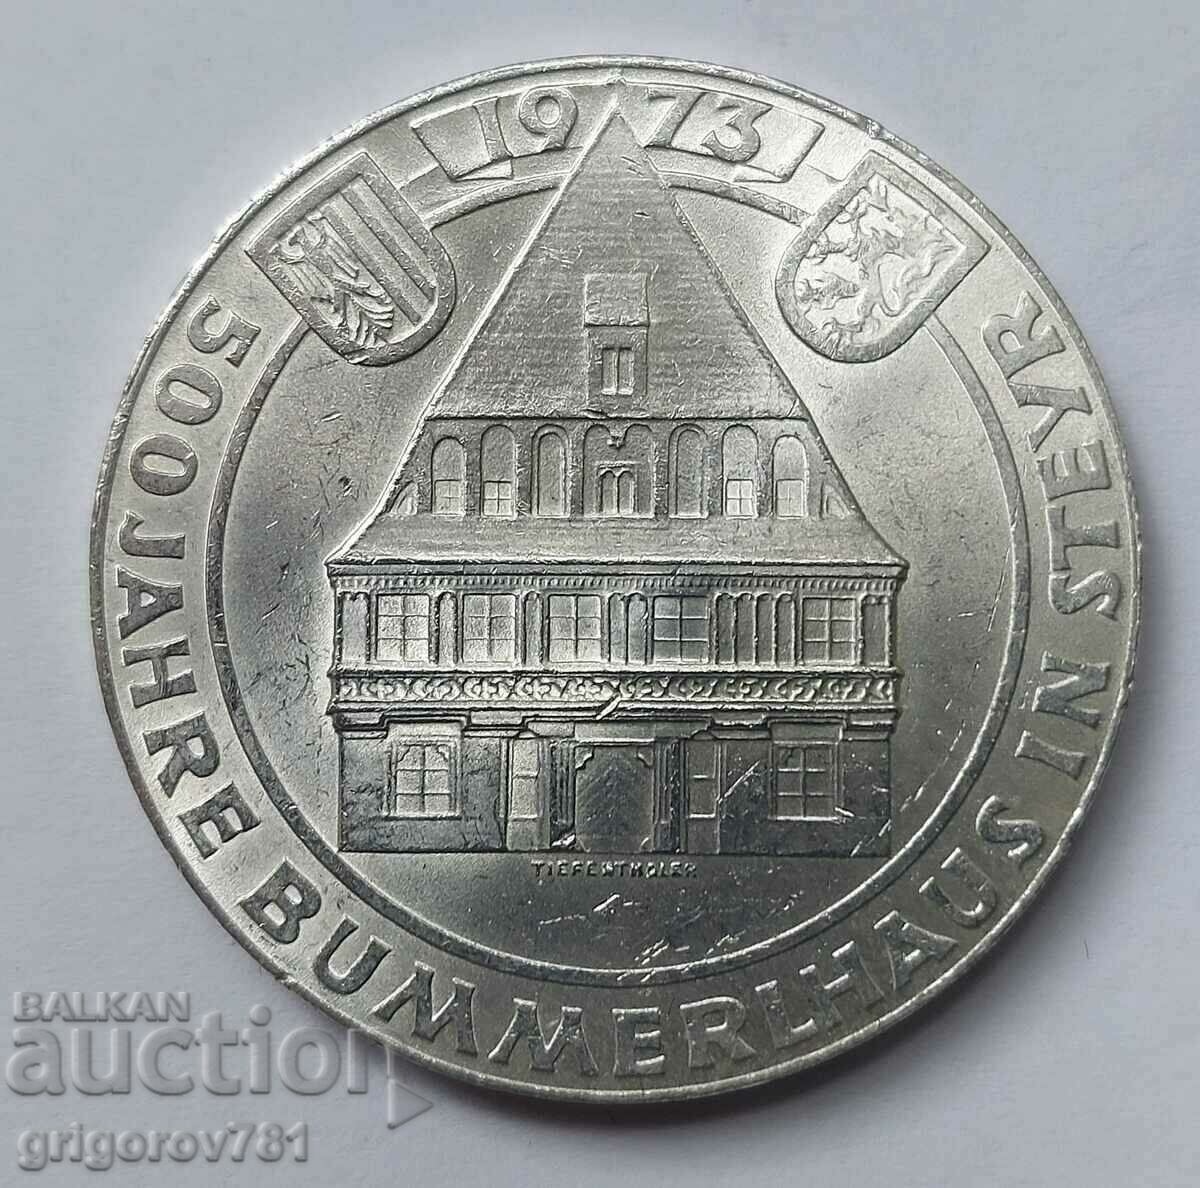 50 Shilling Silver Αυστρία 1973 - Ασημένιο νόμισμα #2